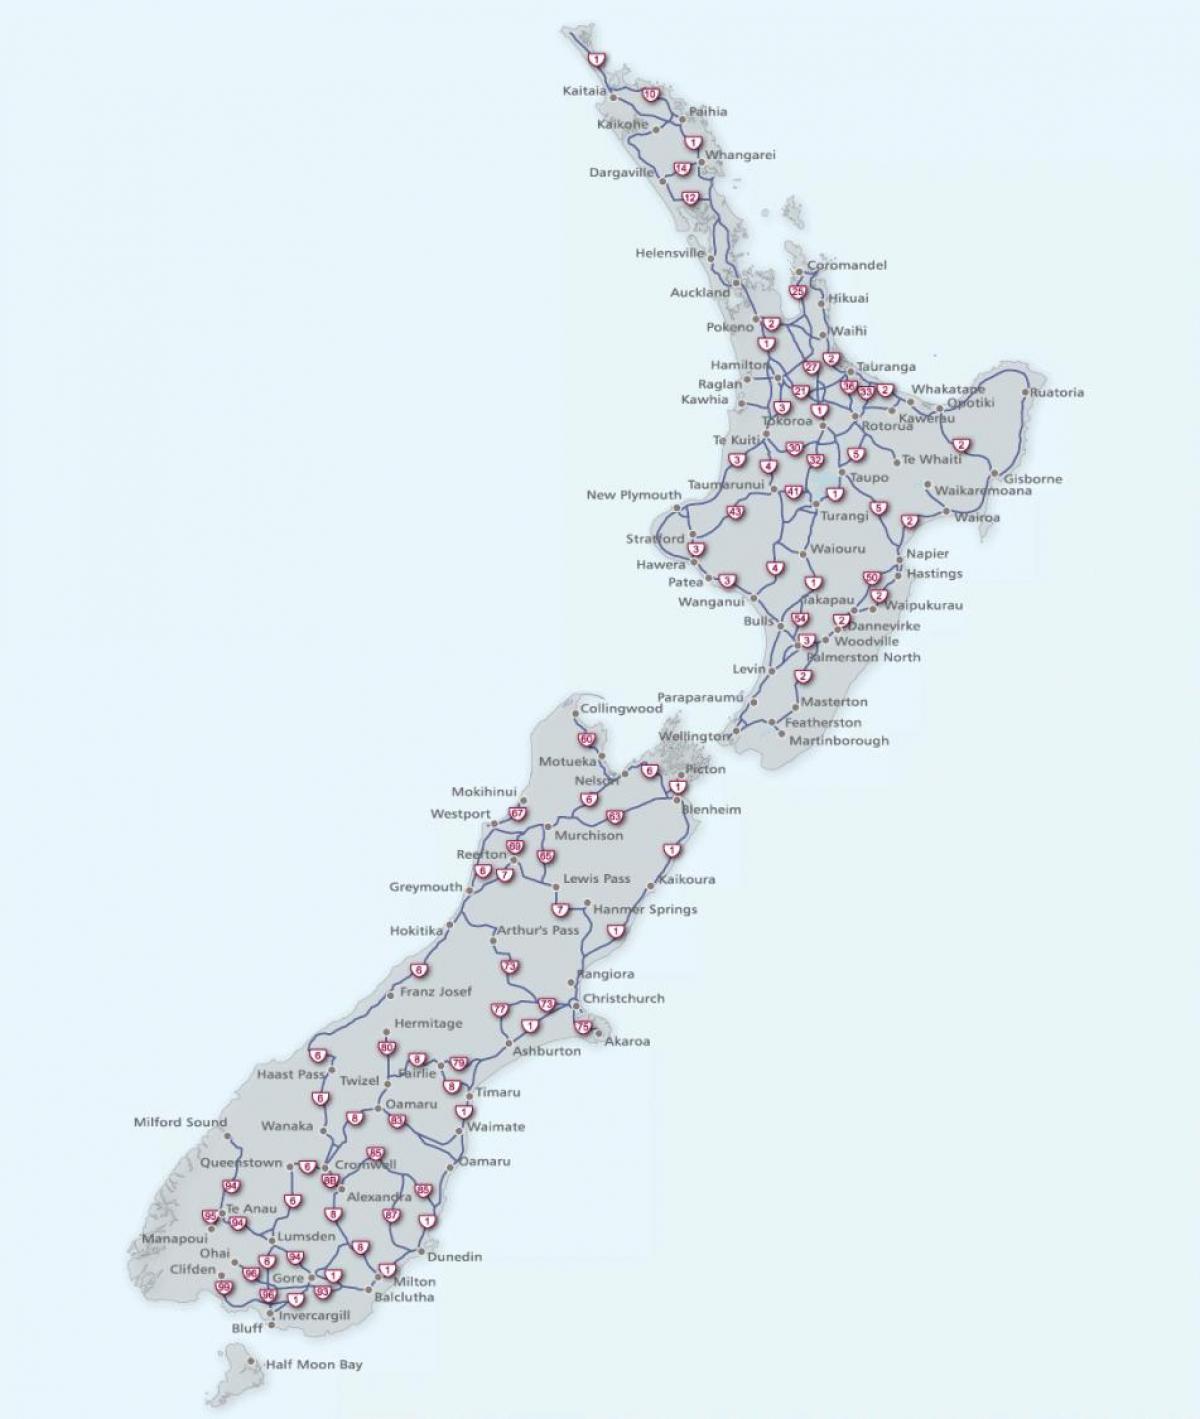 نیوزیلند roads map